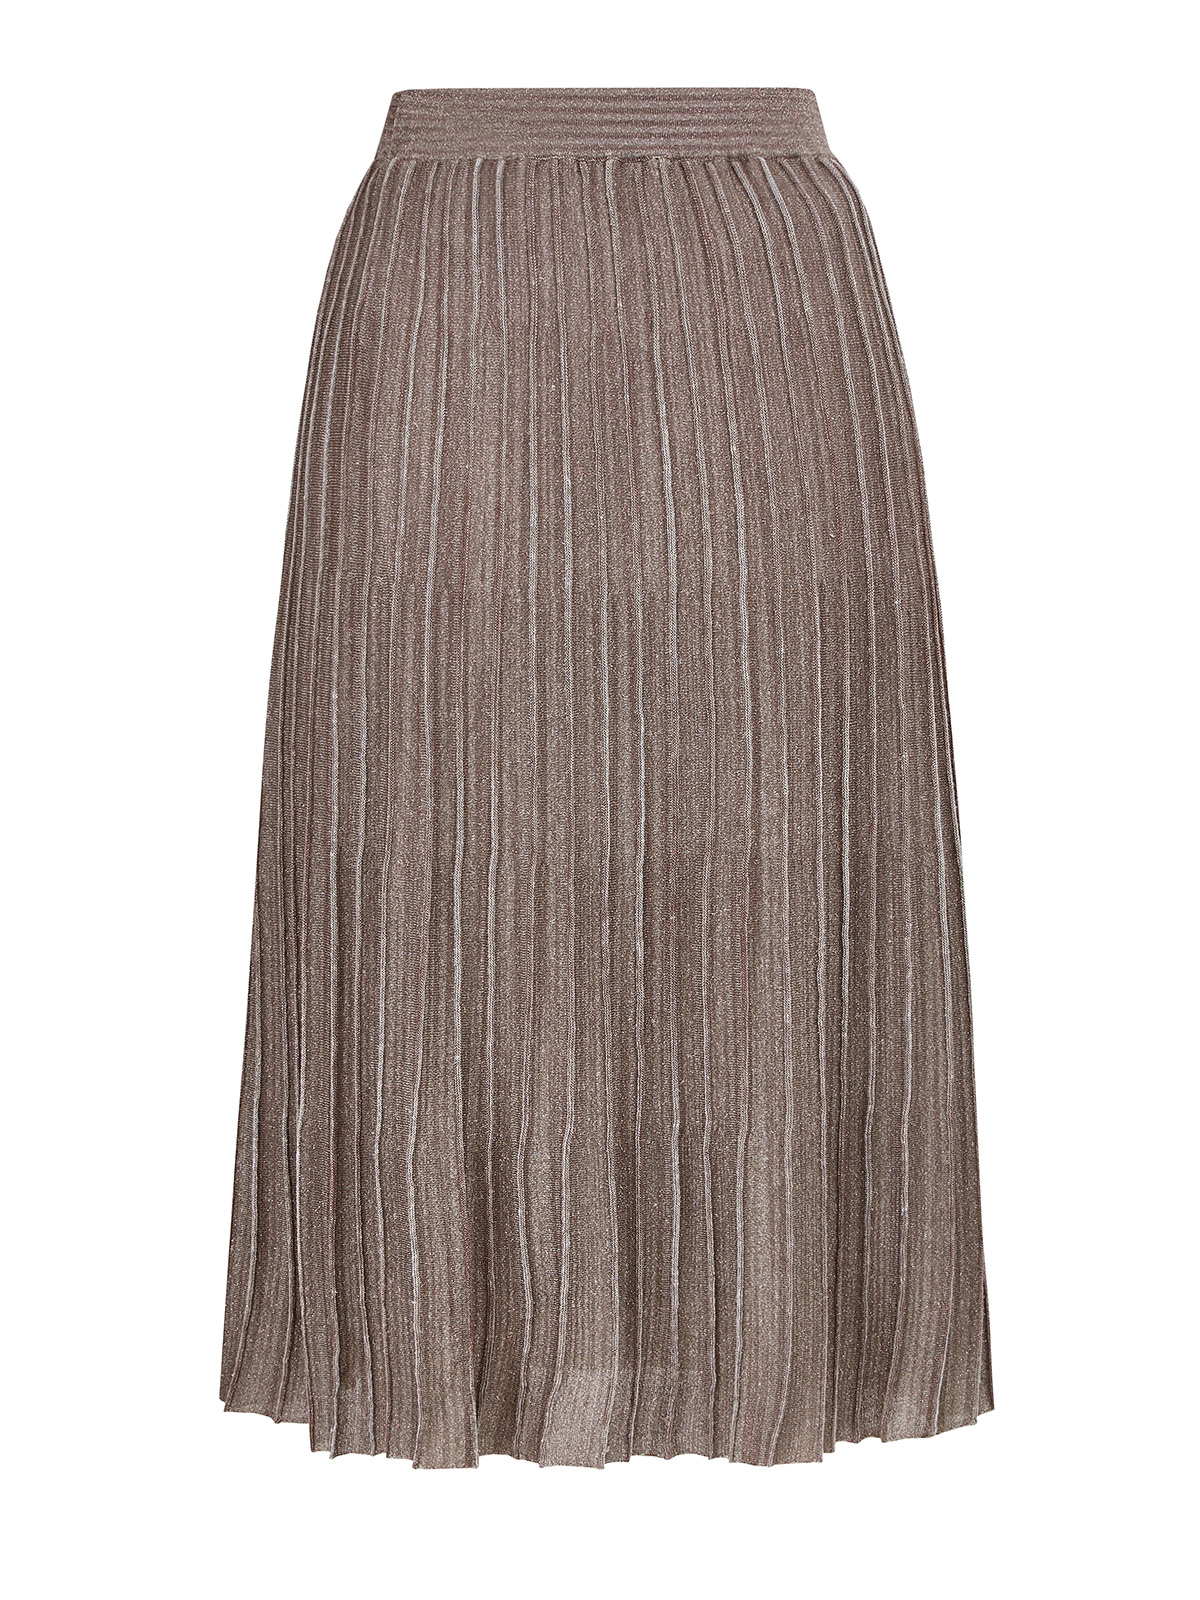 Льняная юбка-плиссе с металлизированной нитью ламе FABIANA FILIPPI, цвет бронзовый, размер 40;42 - фото 1